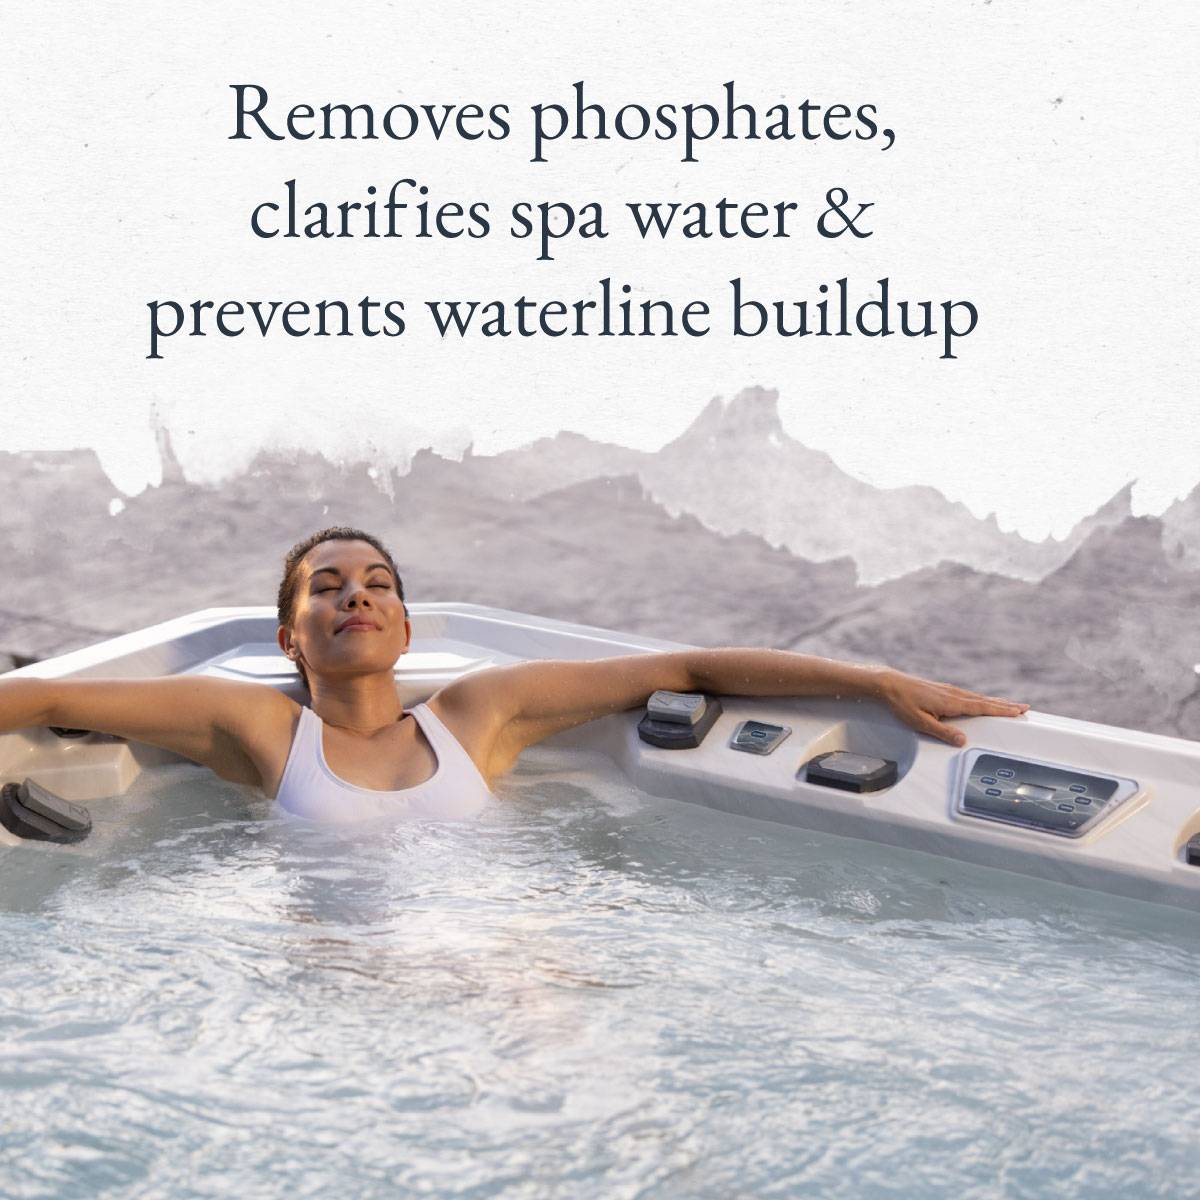 Removes phosphates, clarifies spa water & prevents waterline buildup